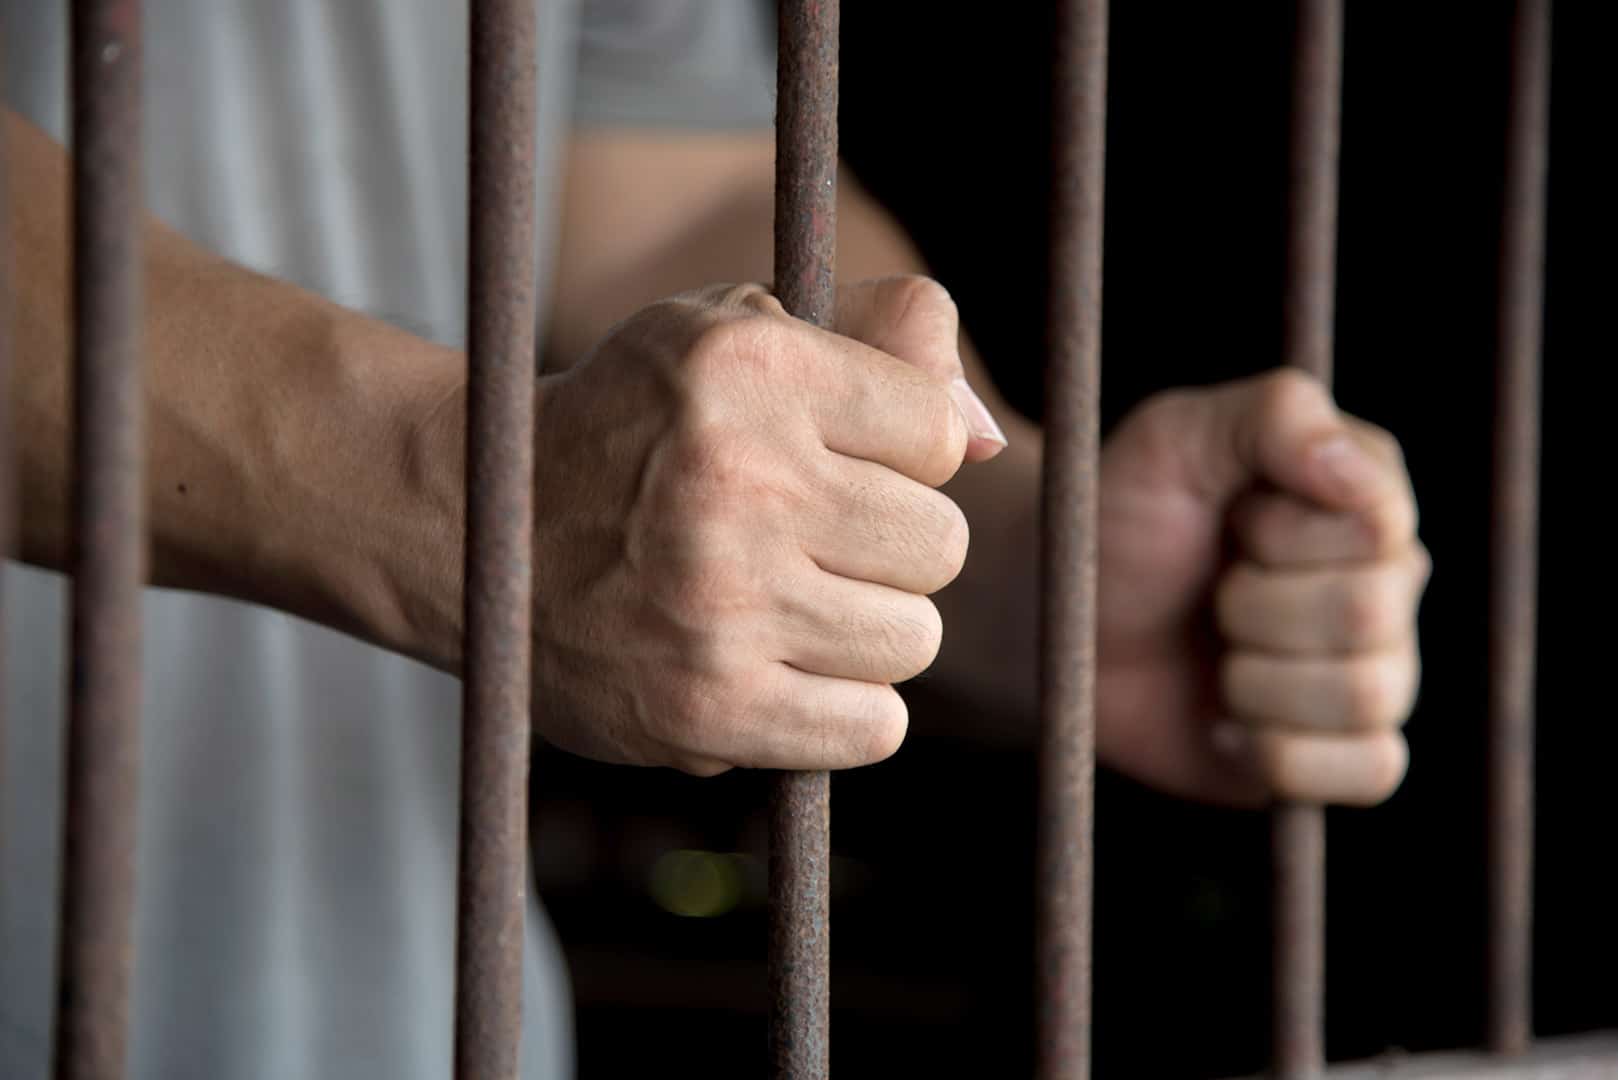 In carcere crescono violenze e disagio mentale.<br> Oltre la metà dei detenuti soffre di un disturbo psichiatrico.<br> I ministeri della Giustizia e della Salute se ne lavano le mani e a farne le spese sono pure i poliziotti penitenziari